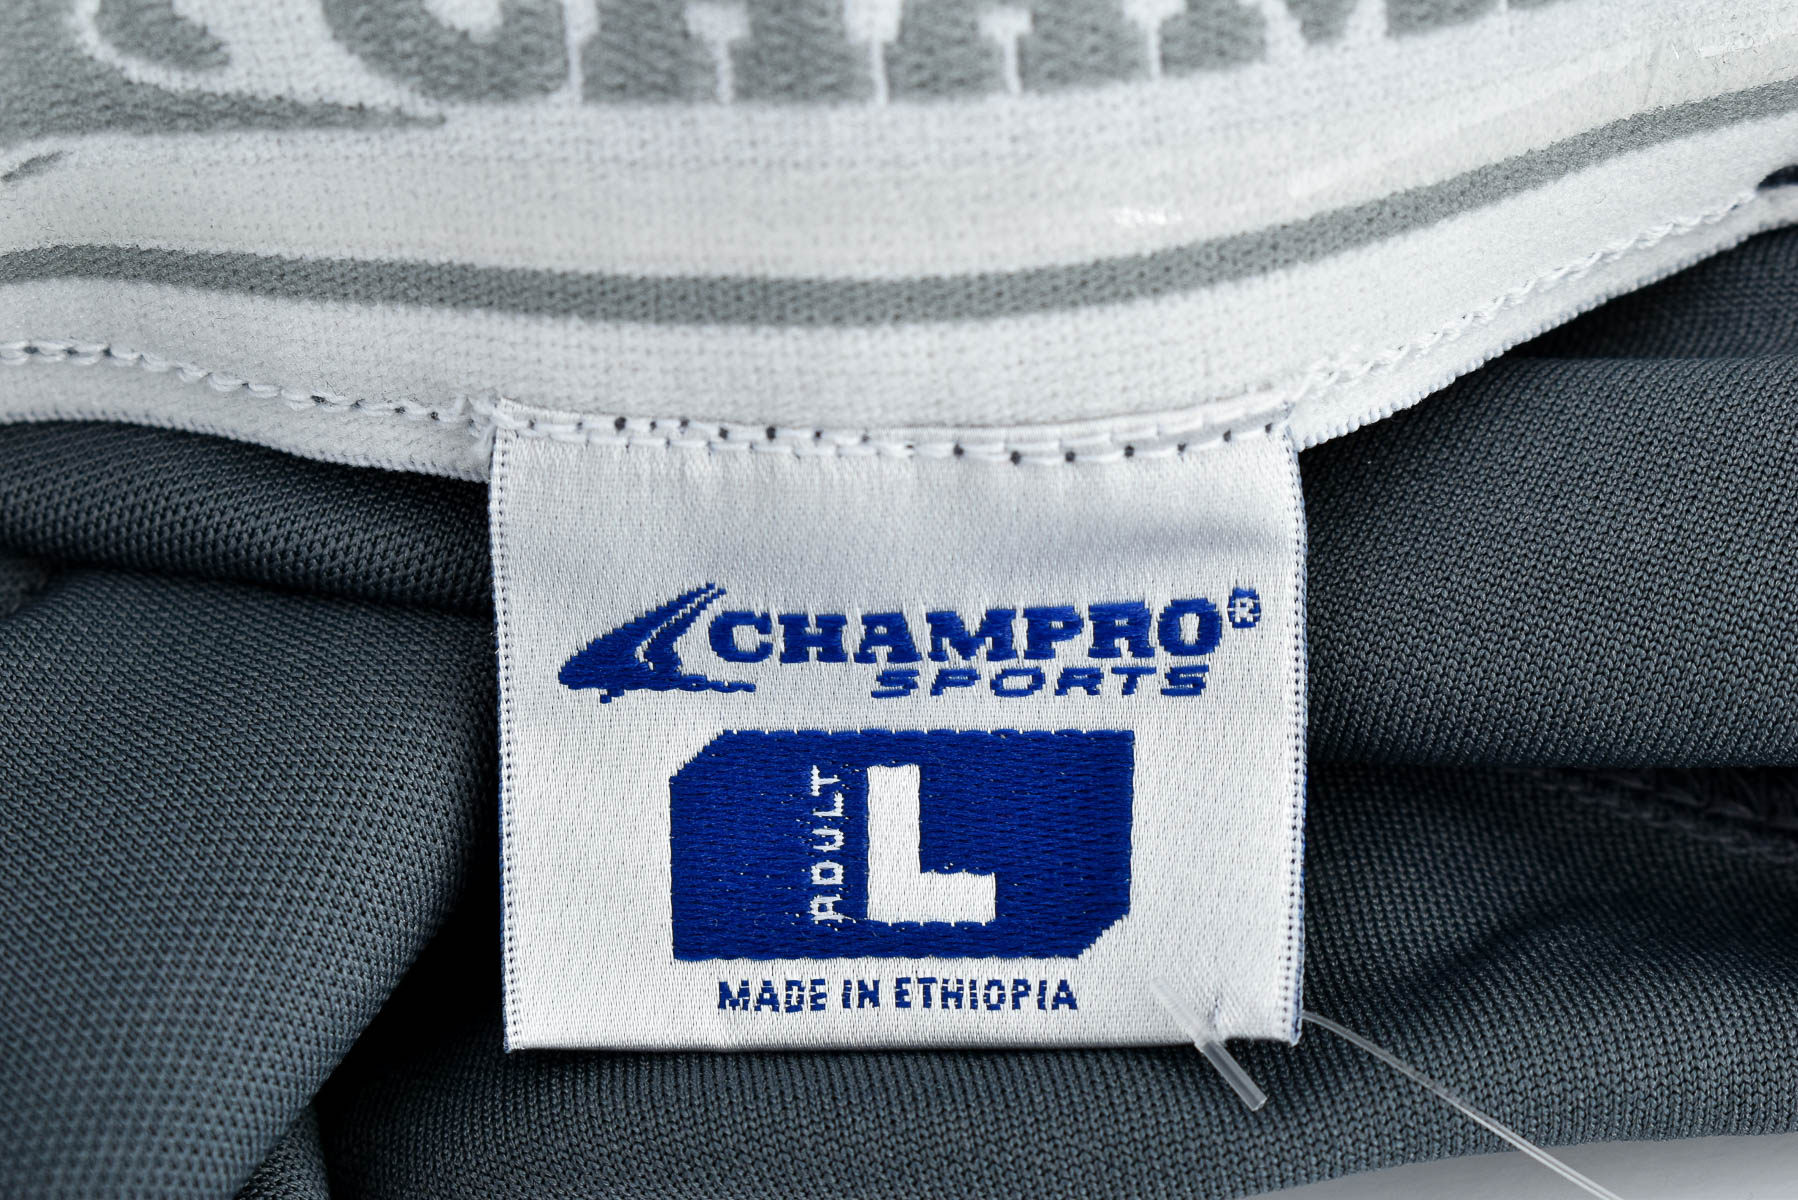 Pantalon pentru bărbați - CHAMPRO SPORTS - 2